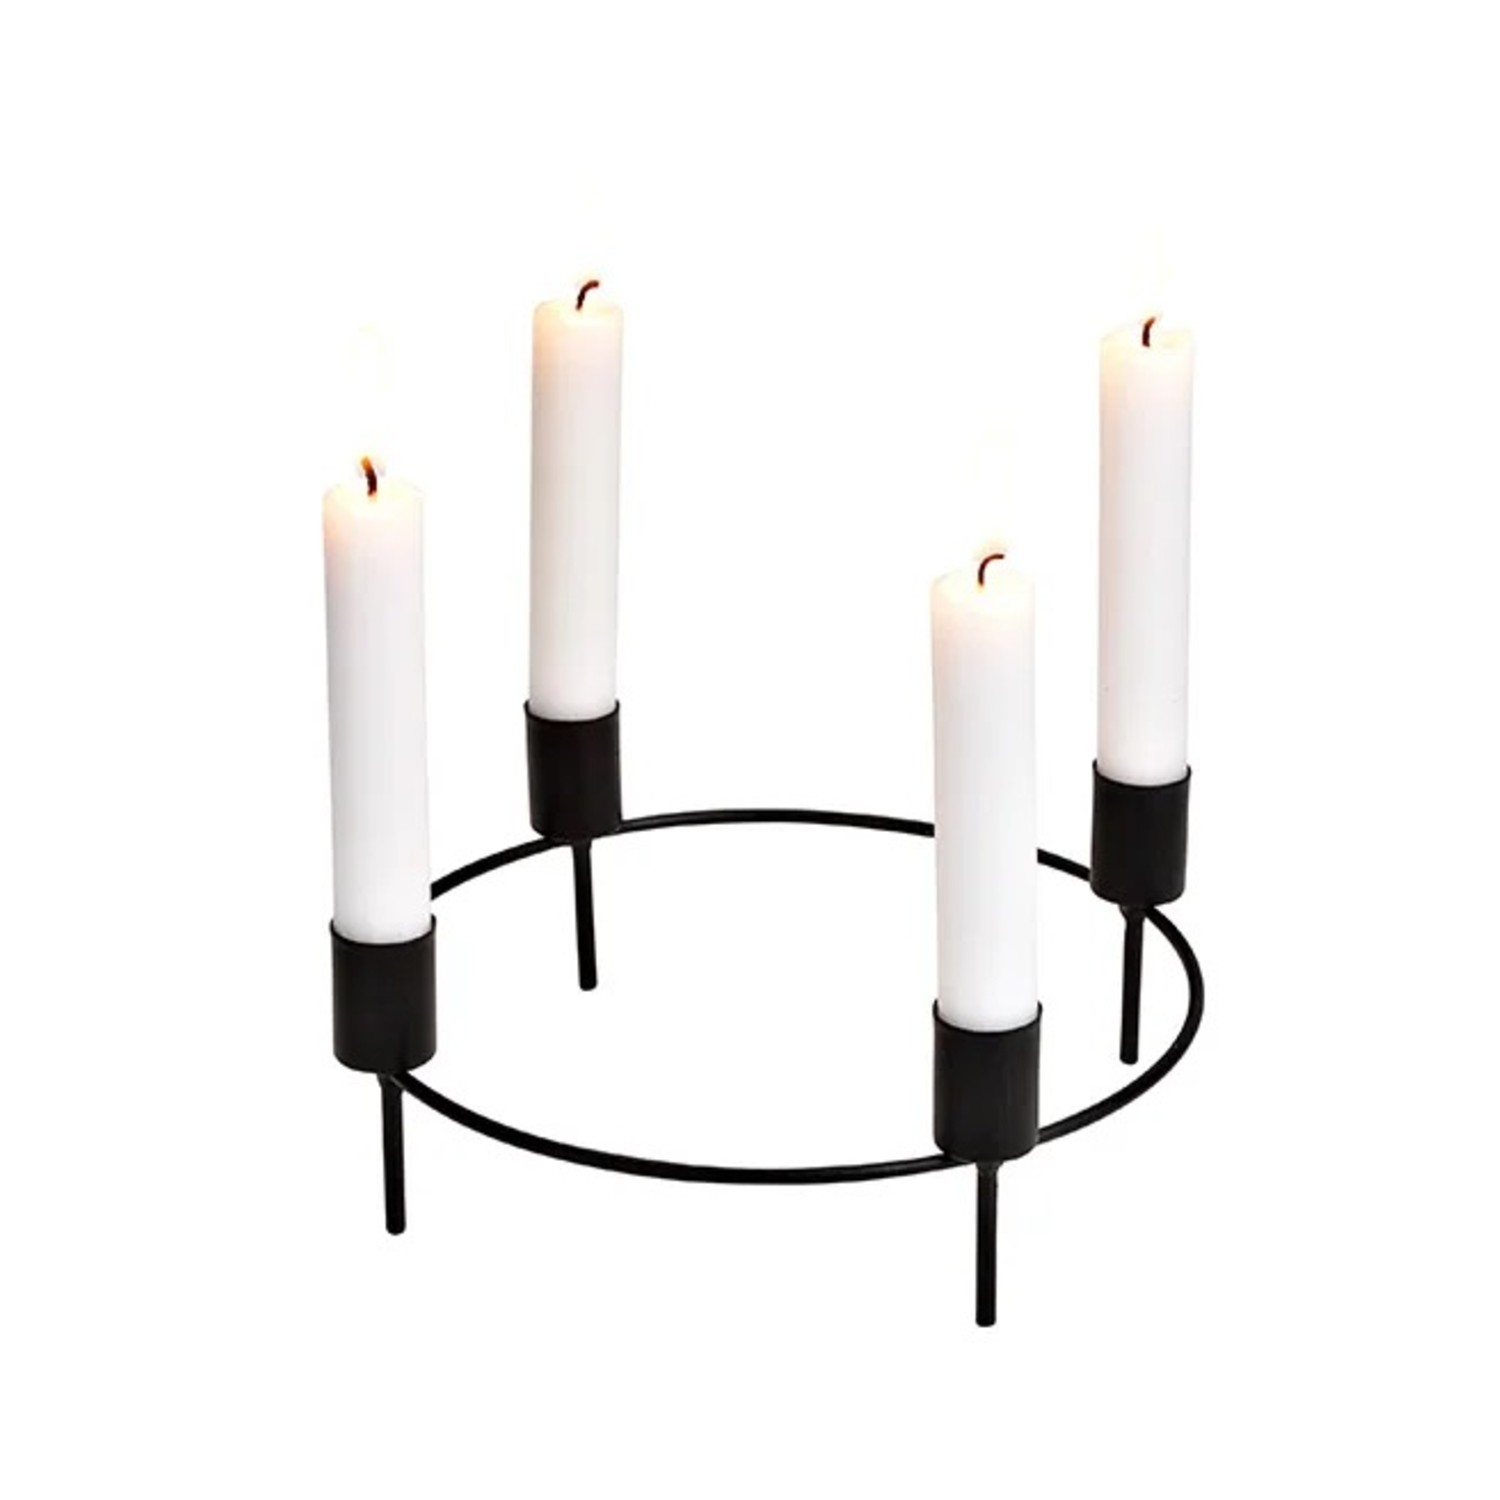 Kerzenhalter Kranzstecker für 4 Kerzen aus Metall Schwarz Ø 22cm